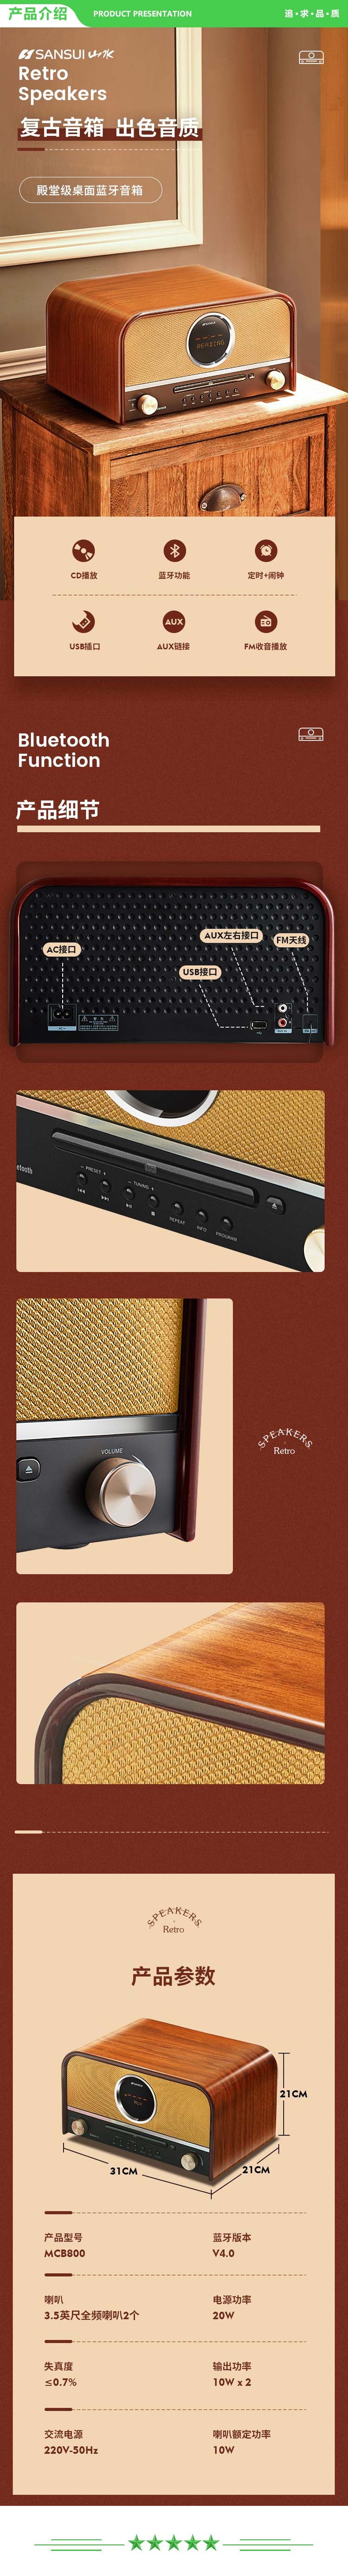 山水-SANSUI-MCB800-复古组合-发烧级老式hifi高音质蓝牙CD机播放机-音箱-胡桃色-.jpg